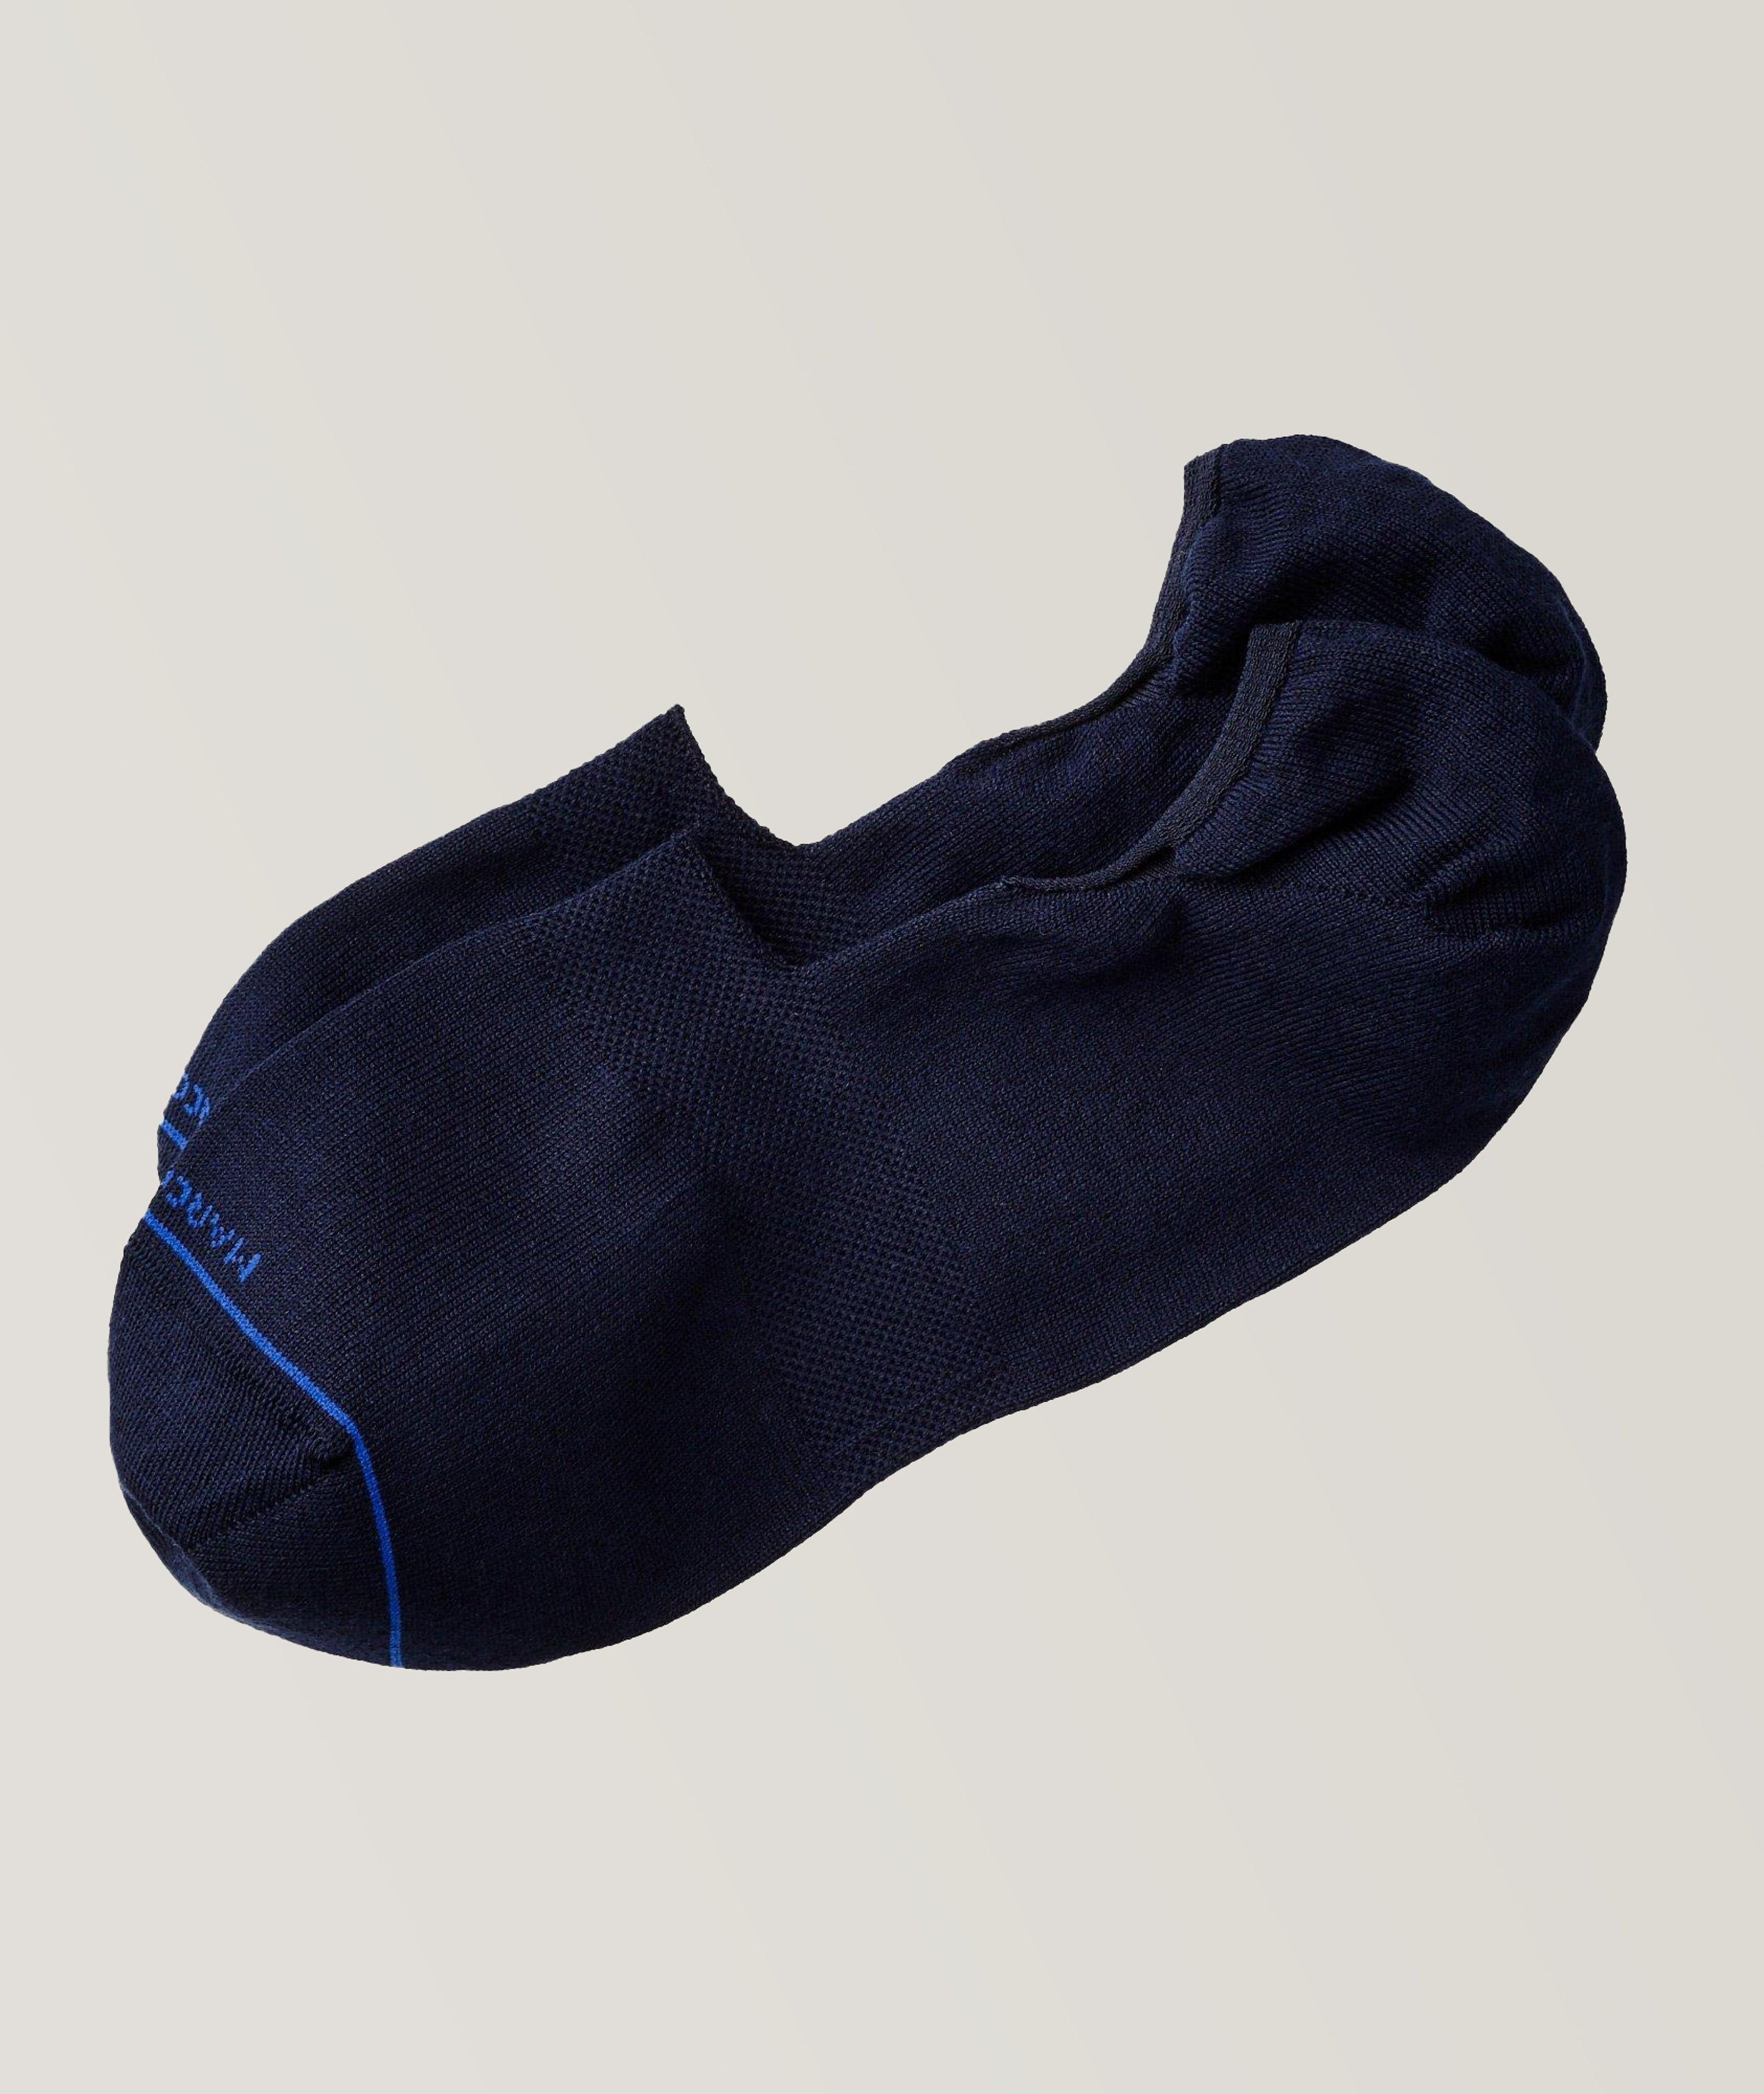 Chaussettes courtes, modèle Invisible Touch image 0